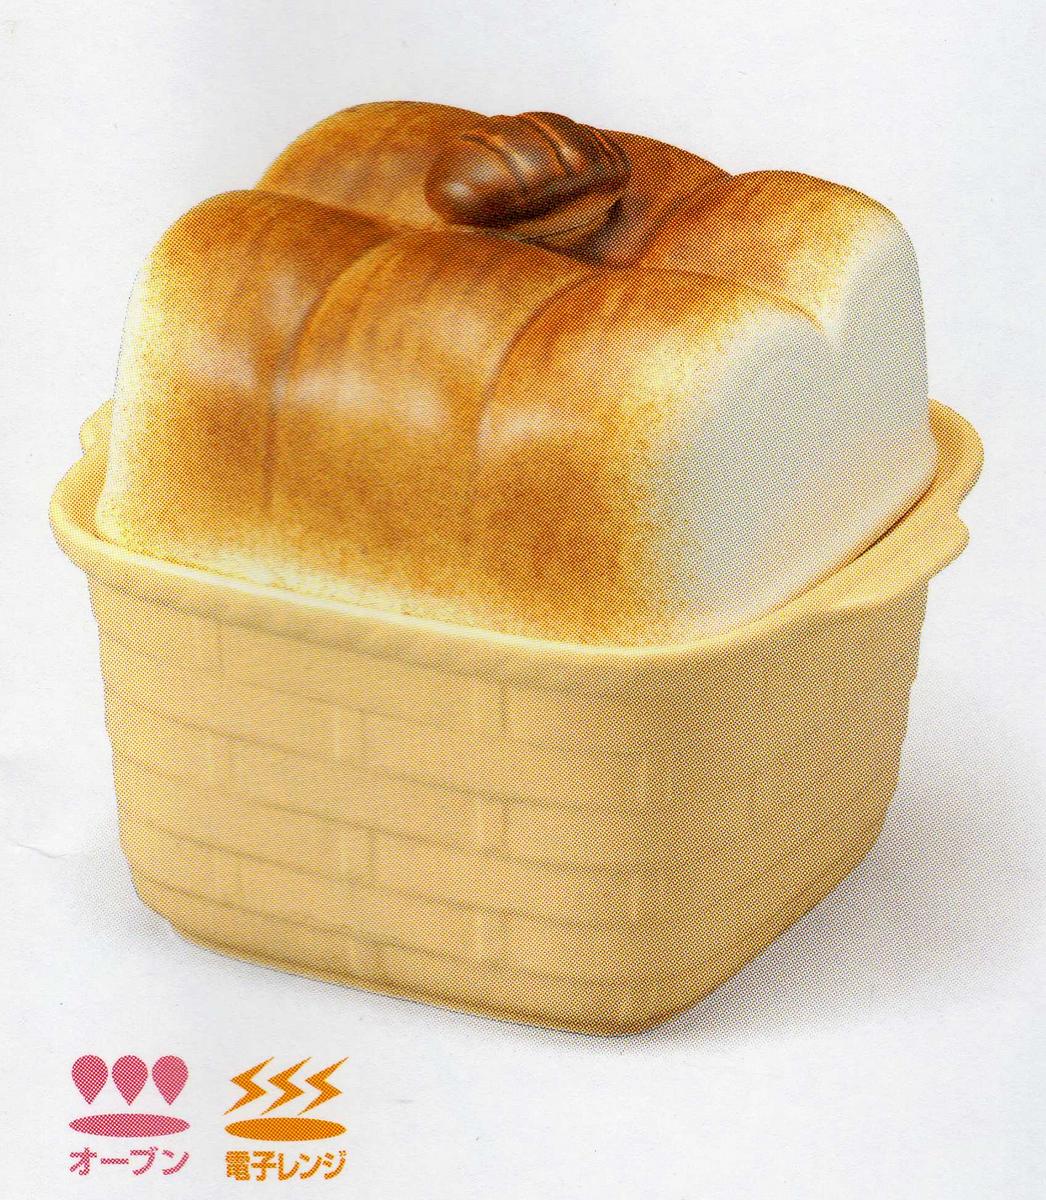 楽天市場 パン型パンボックス 萬古焼 万古焼 陶器 パン ブレッドメーカー 食パン 保存 くらしの陶器 さかえ家